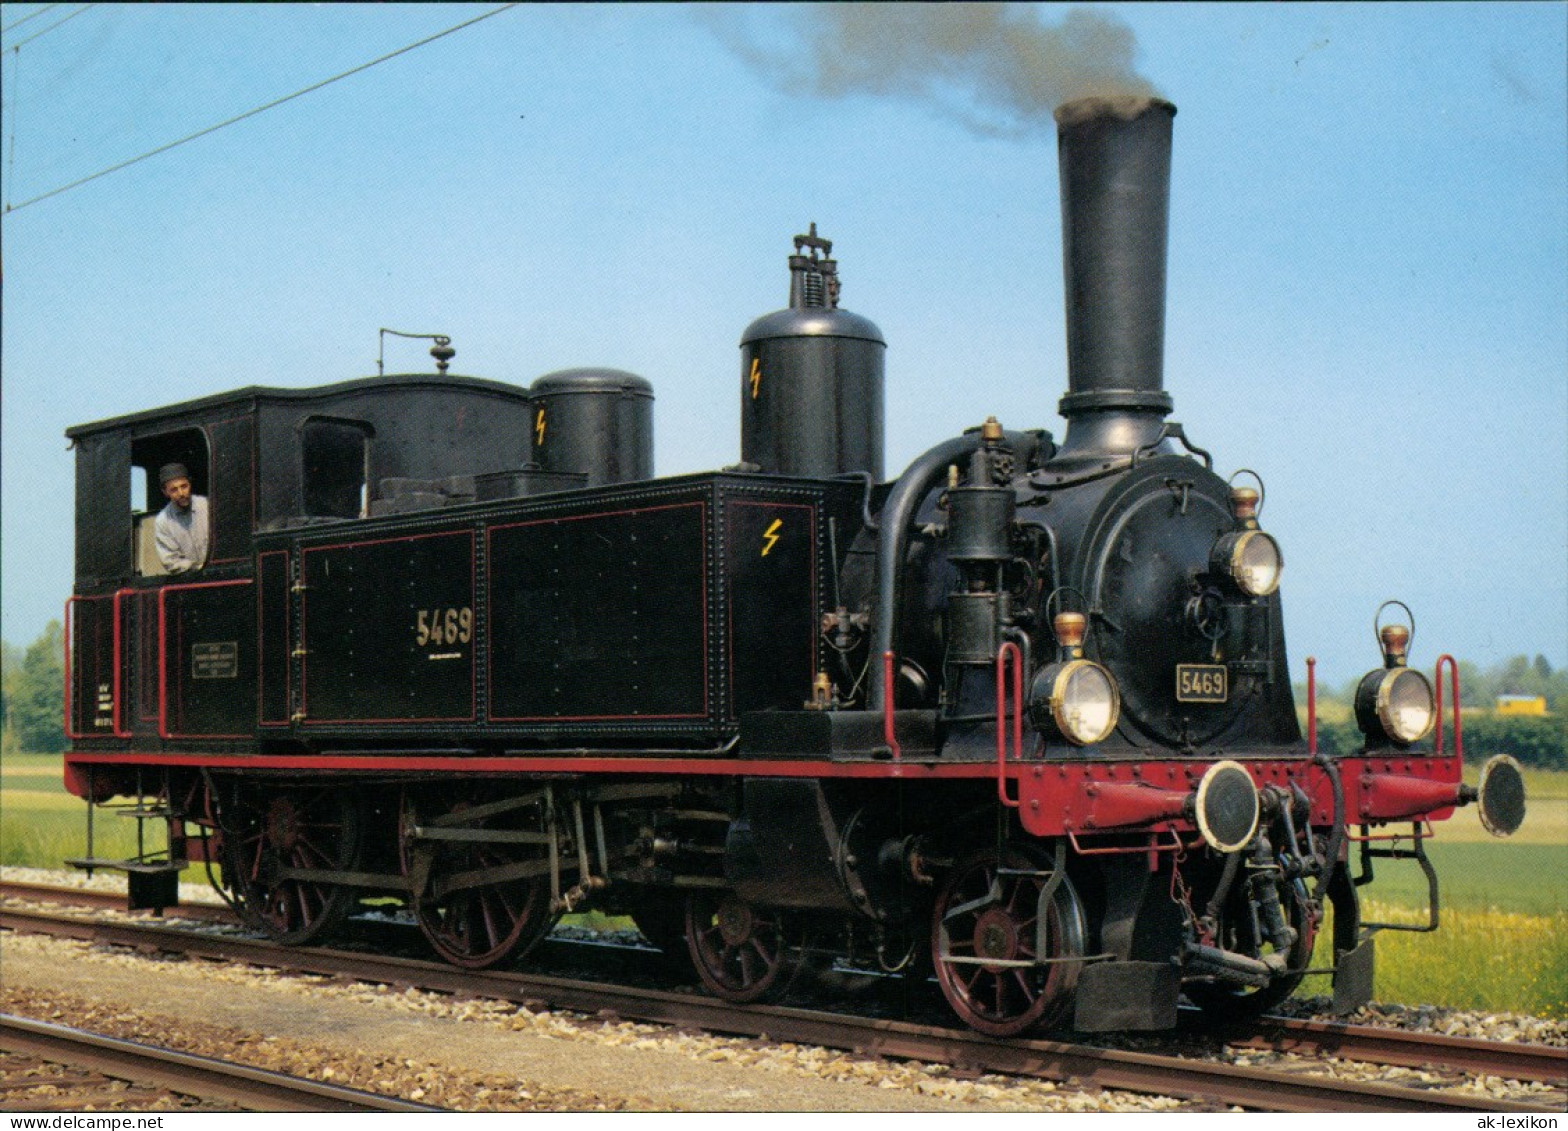 Verkehr & Eisenbahn (Railway) Dampflokomotive Eb 2/4 5469 Rail Boutique 1980 - Trains